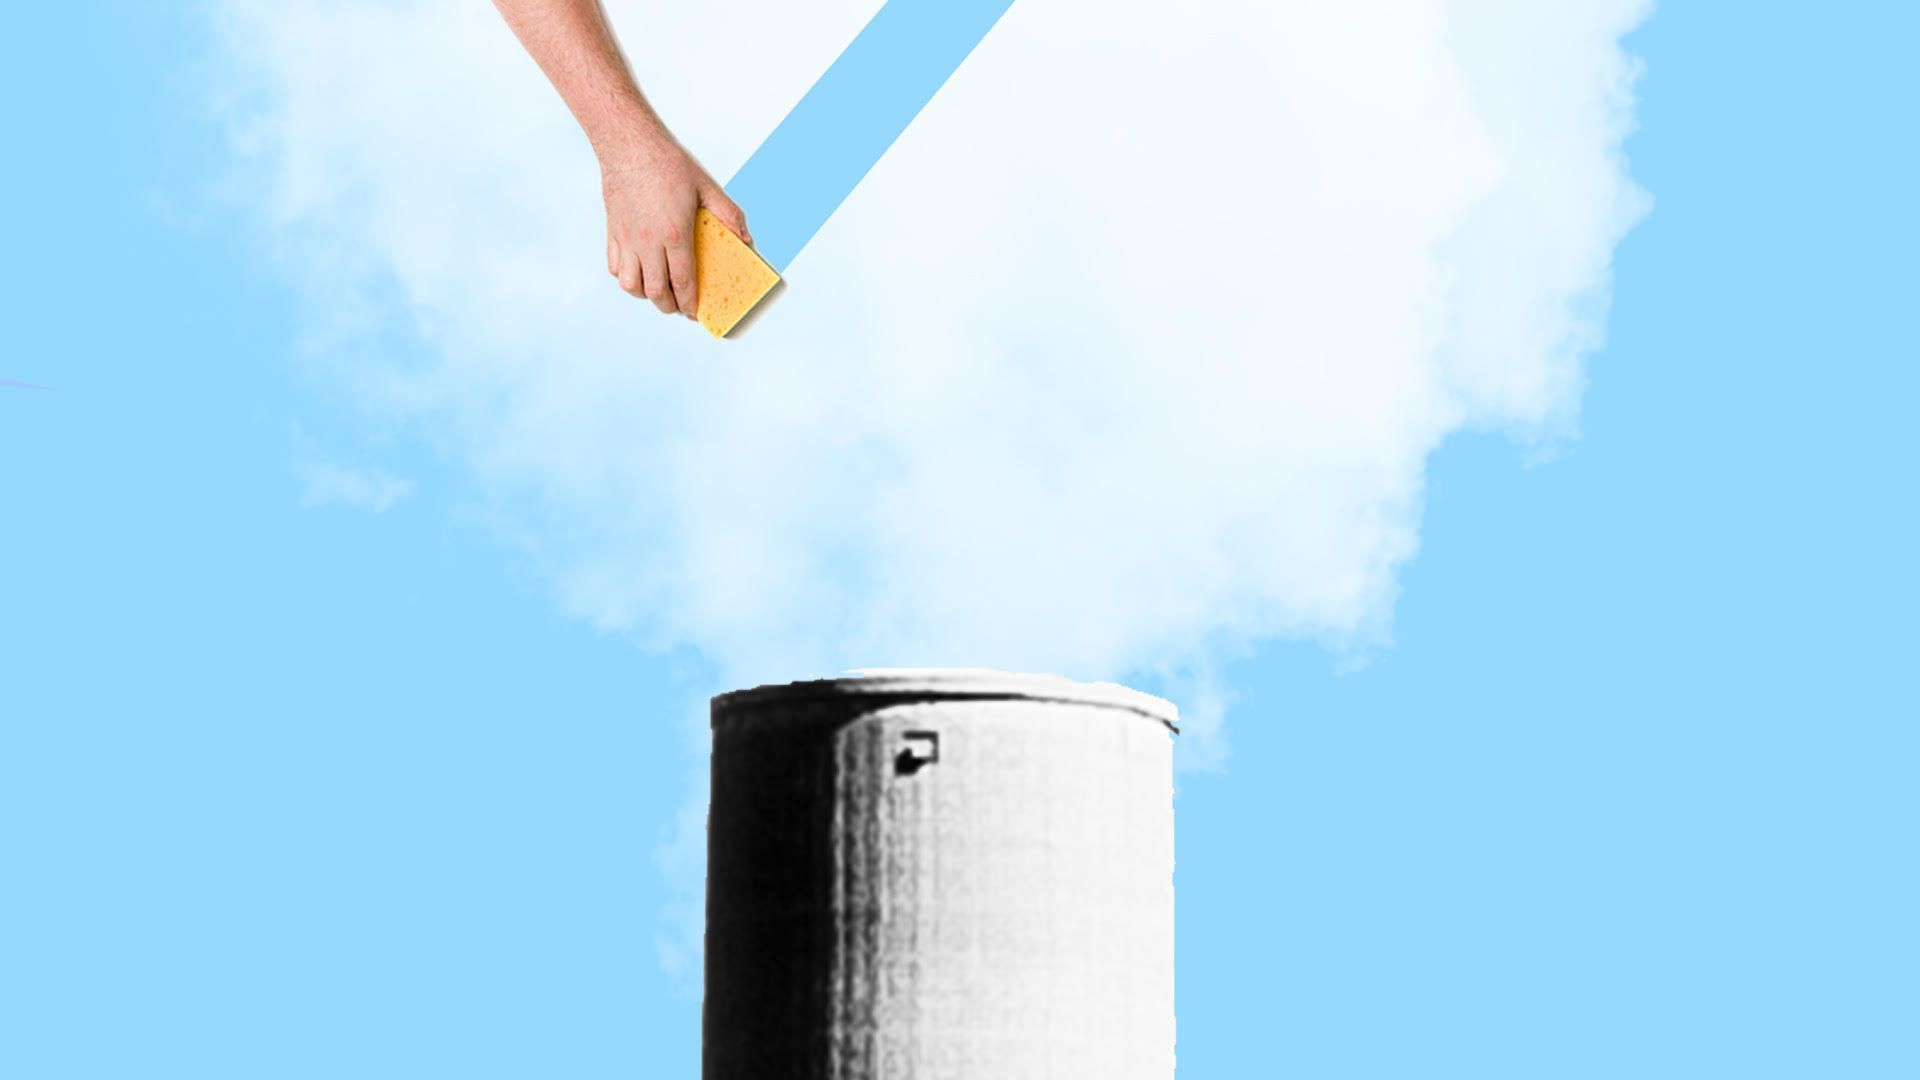 illustration of hand erasing smokestack smoke